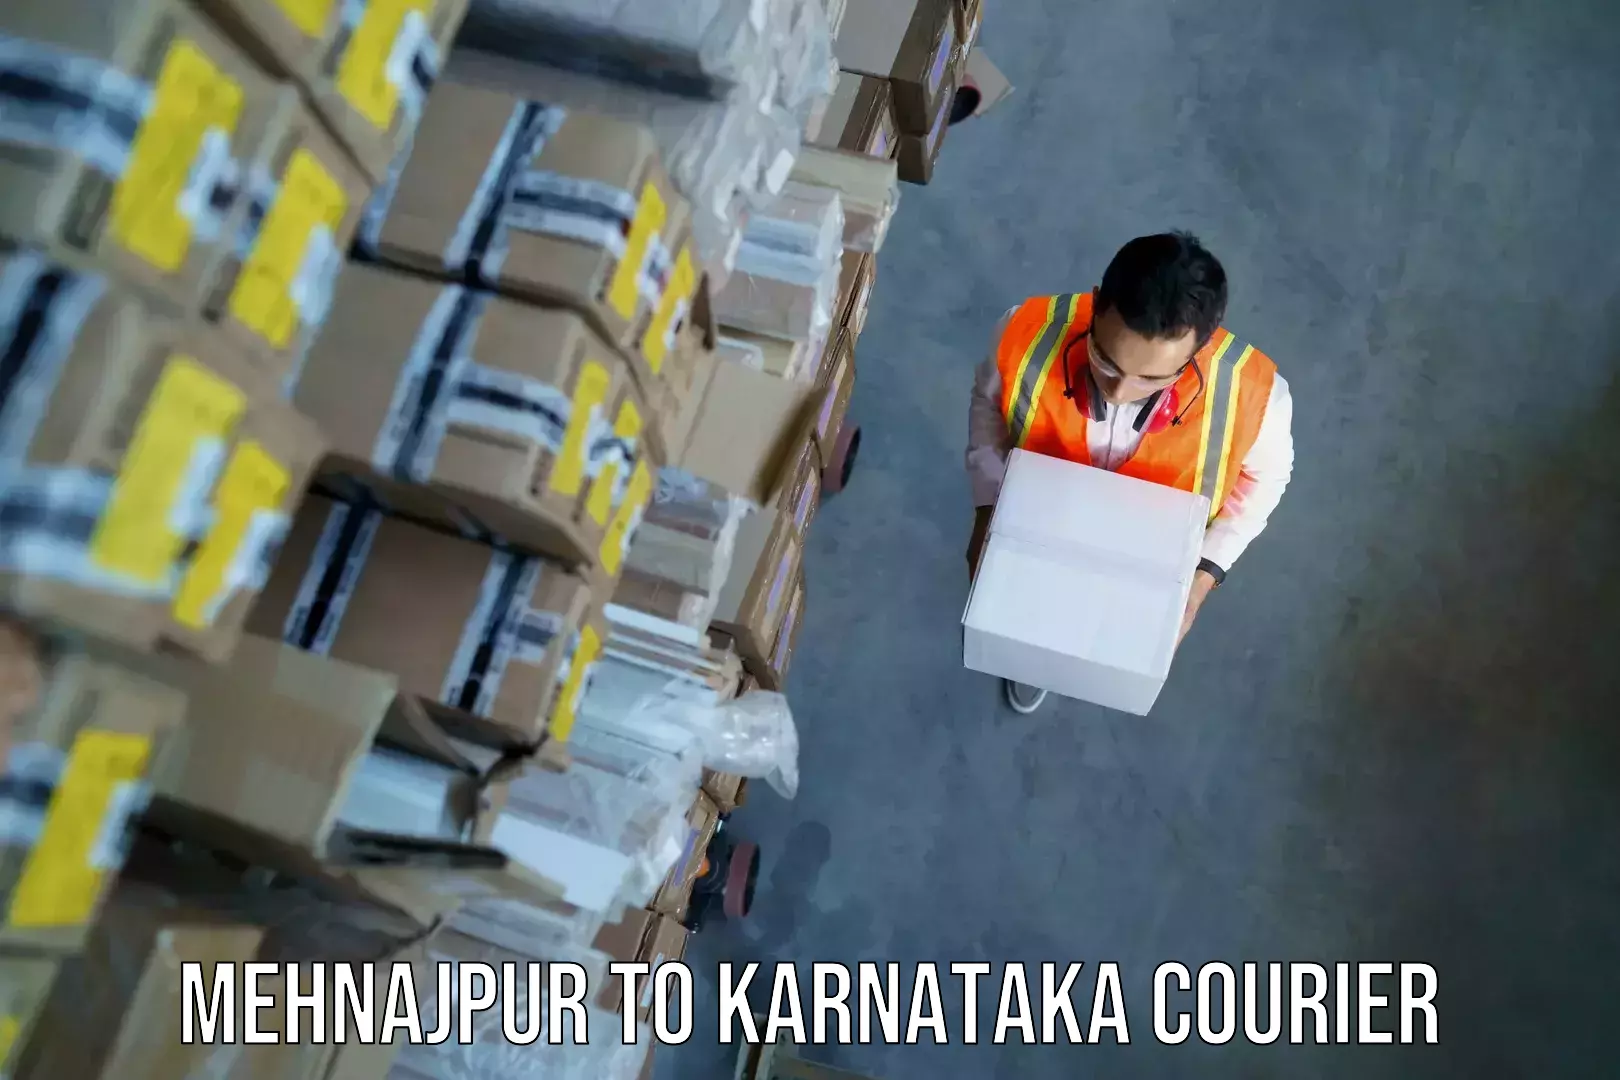 Baggage shipping experts Mehnajpur to Chikkanayakanahalli